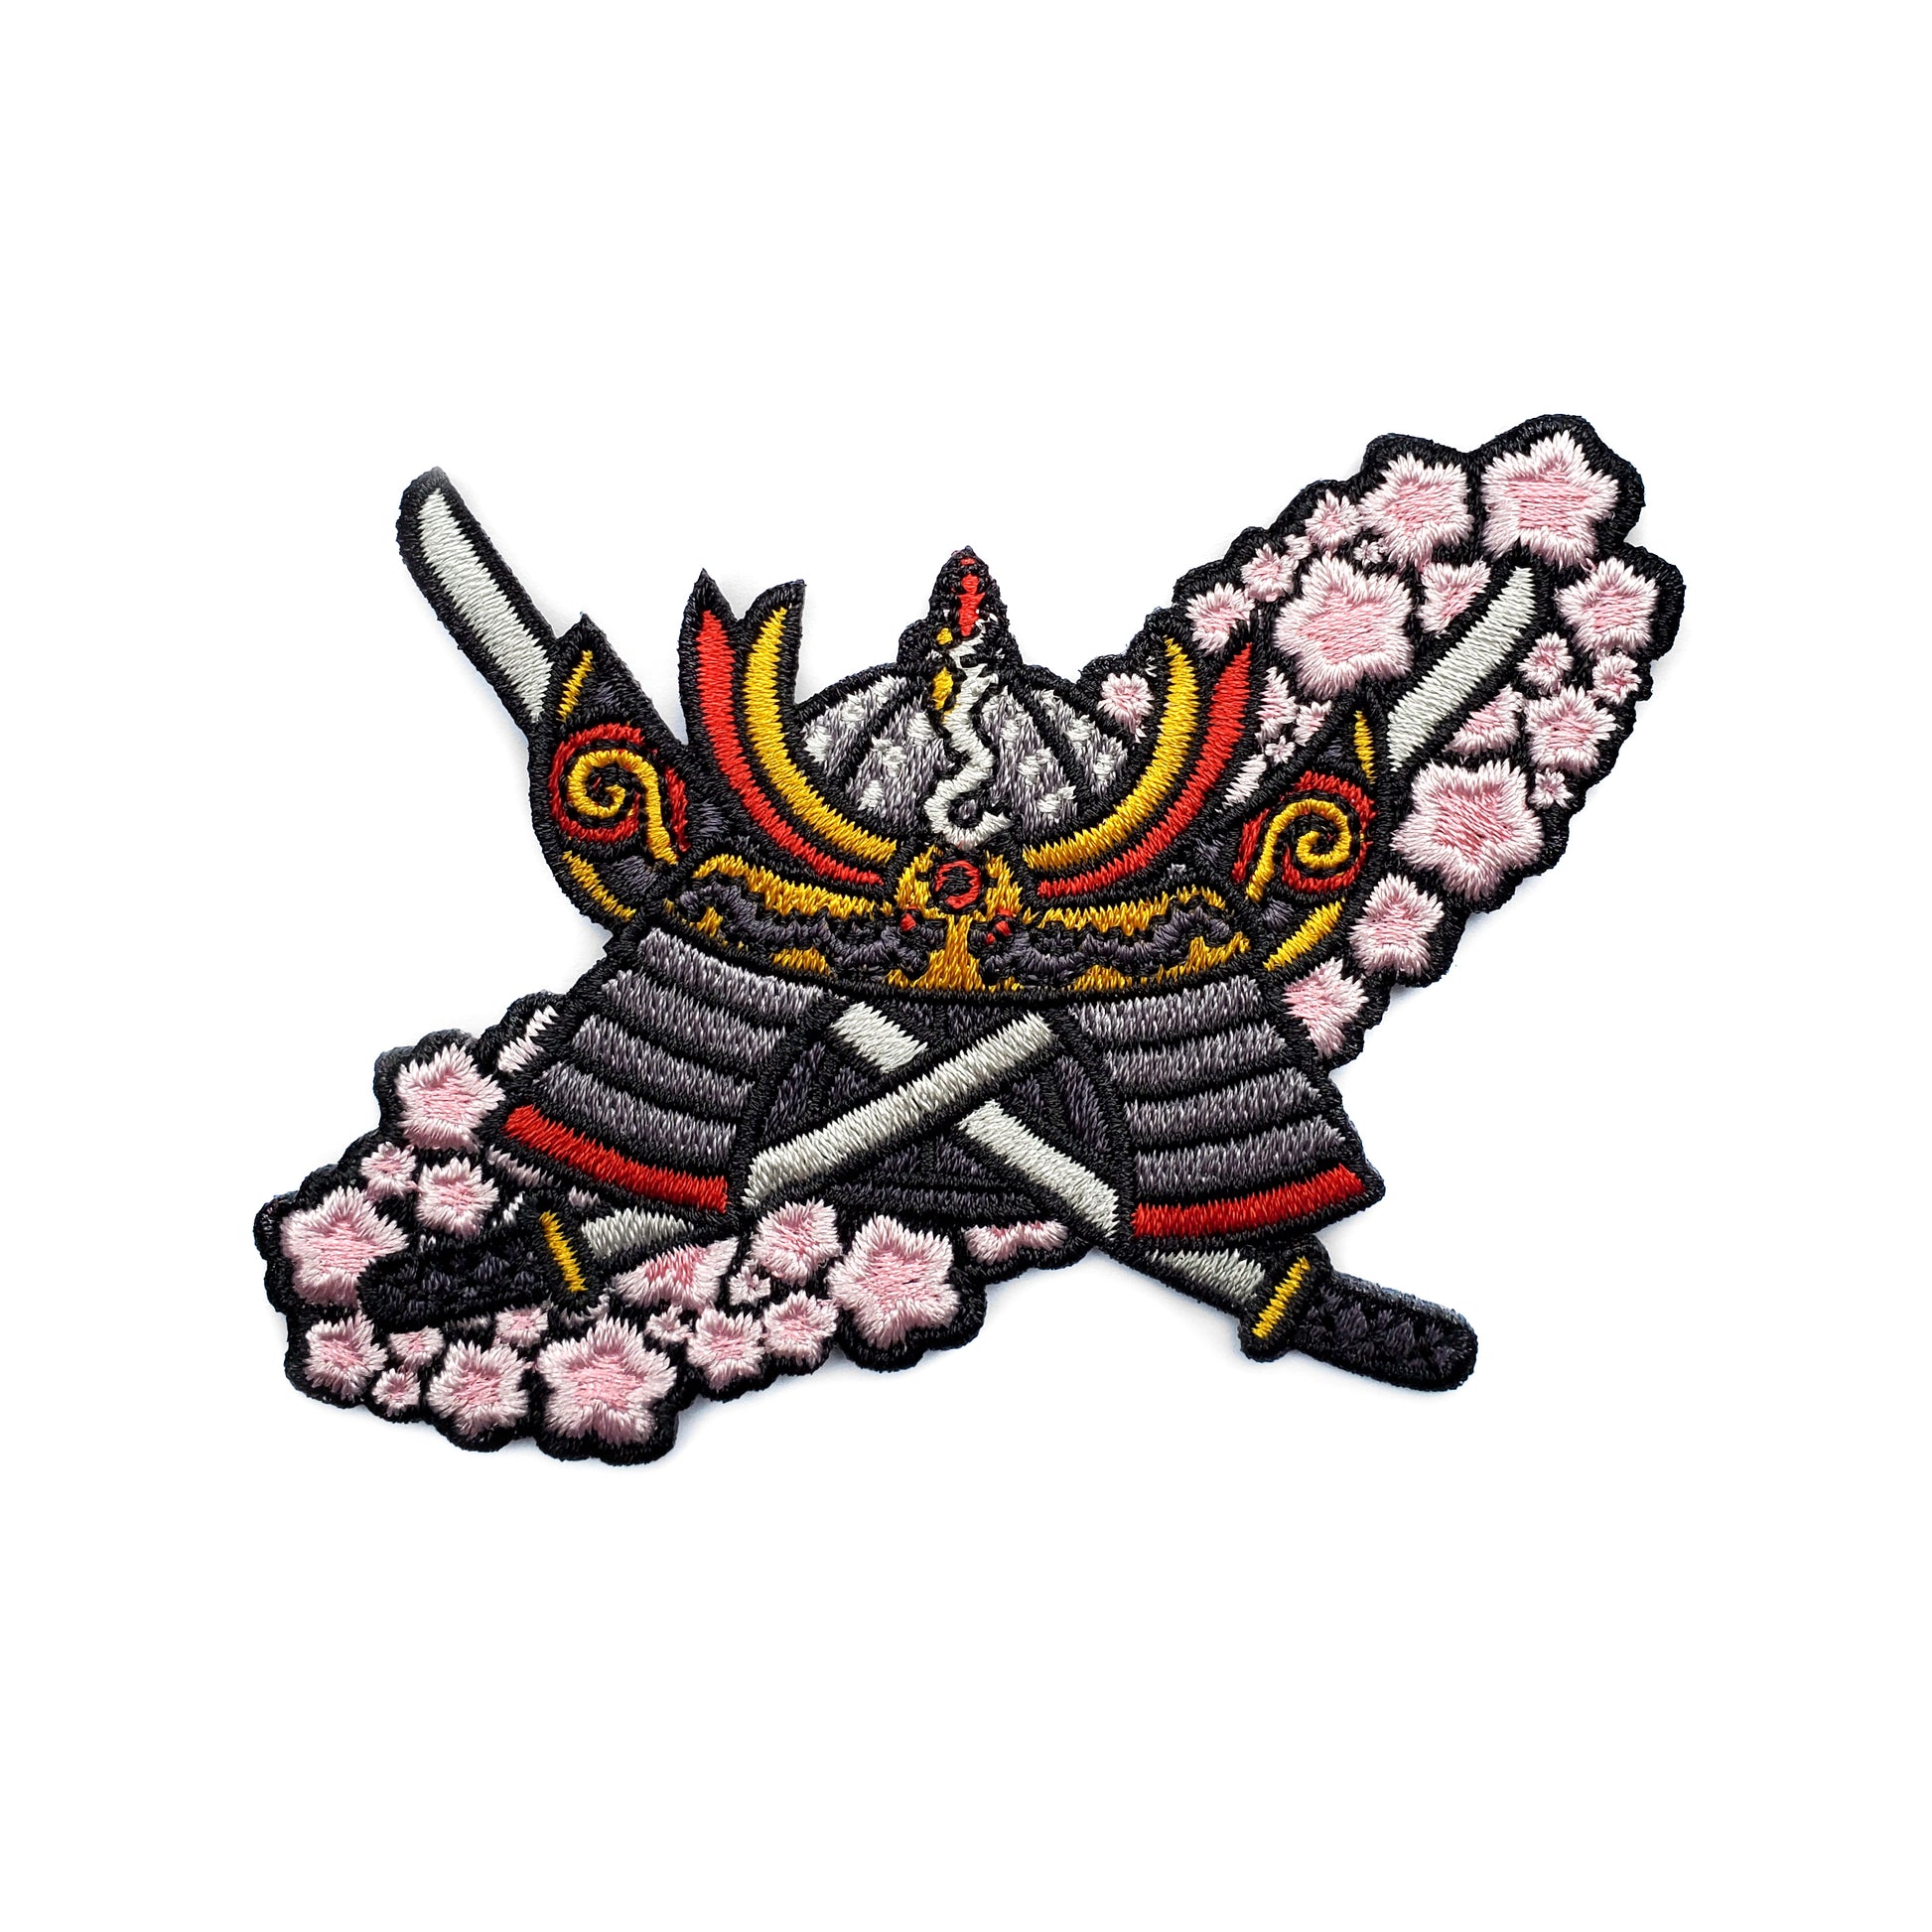 Sakura Samurai Patch - Kolorspun Enamel Pins